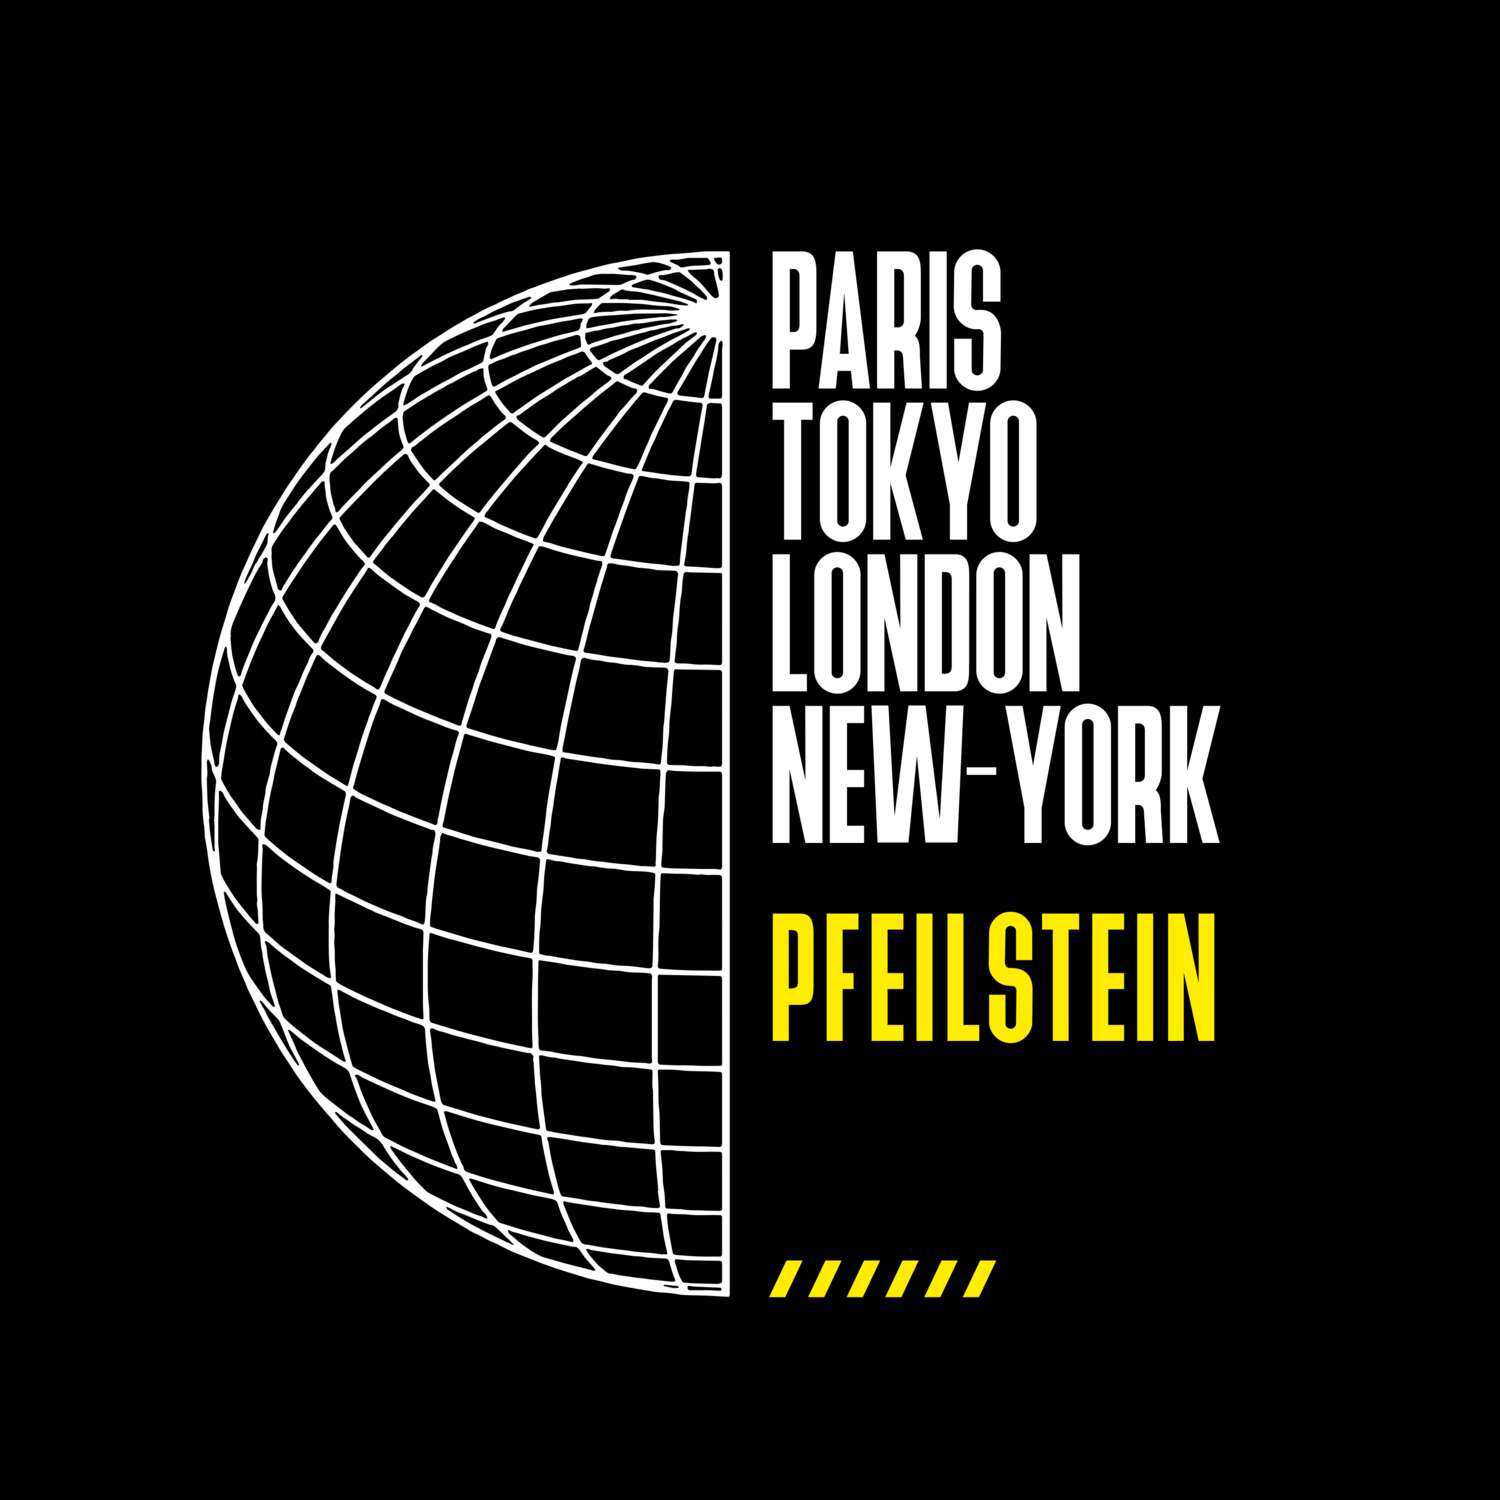 Pfeilstein T-Shirt »Paris Tokyo London«